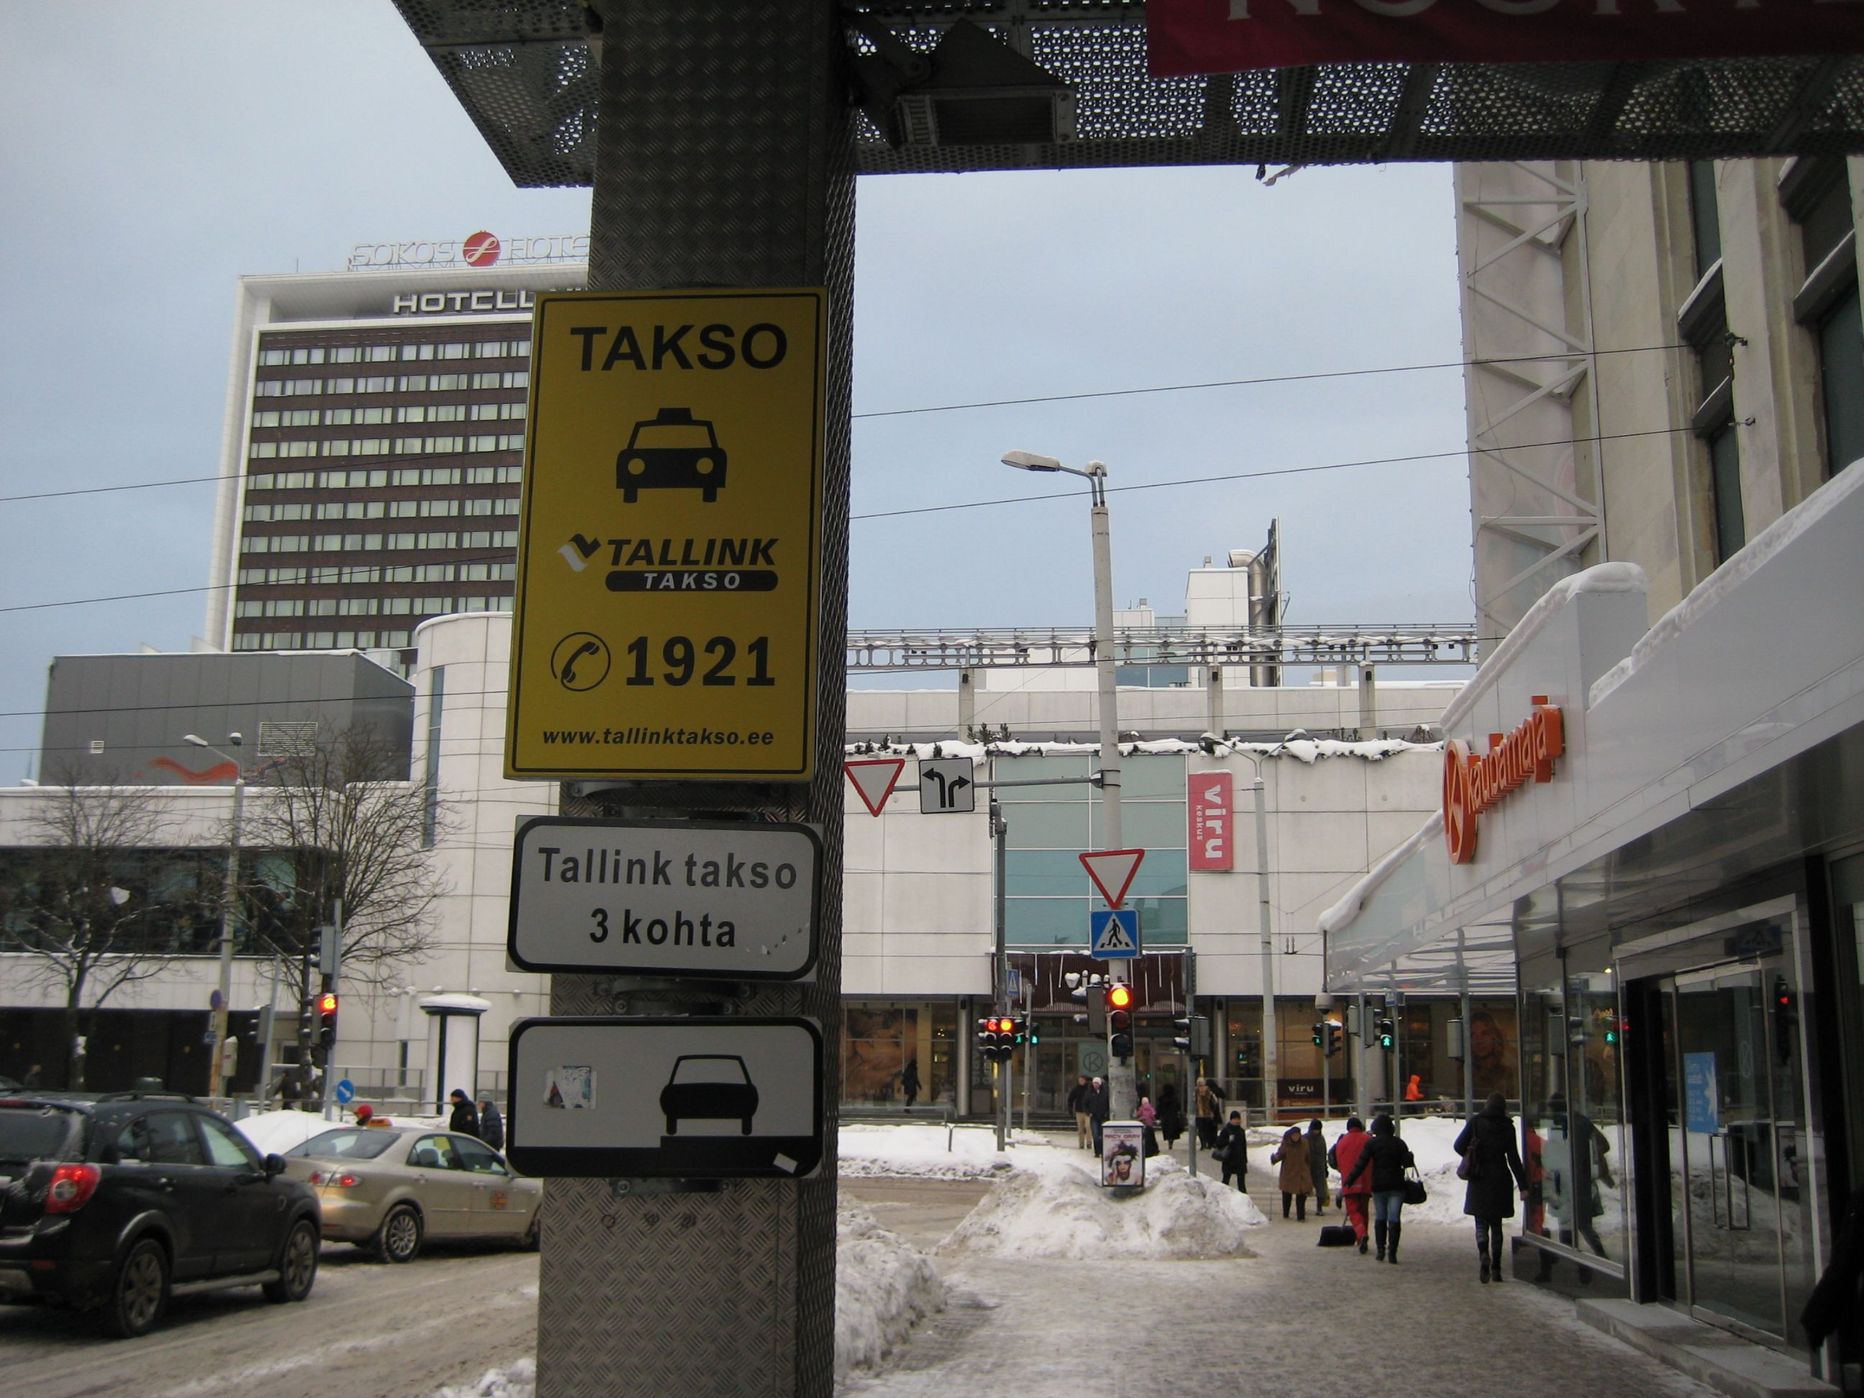 Стоянка такси около Kaubamaja находится на принадлежащей универмагу территории, и Tallink Takso использует ее на основании заключенного с Kaubamaja договора.